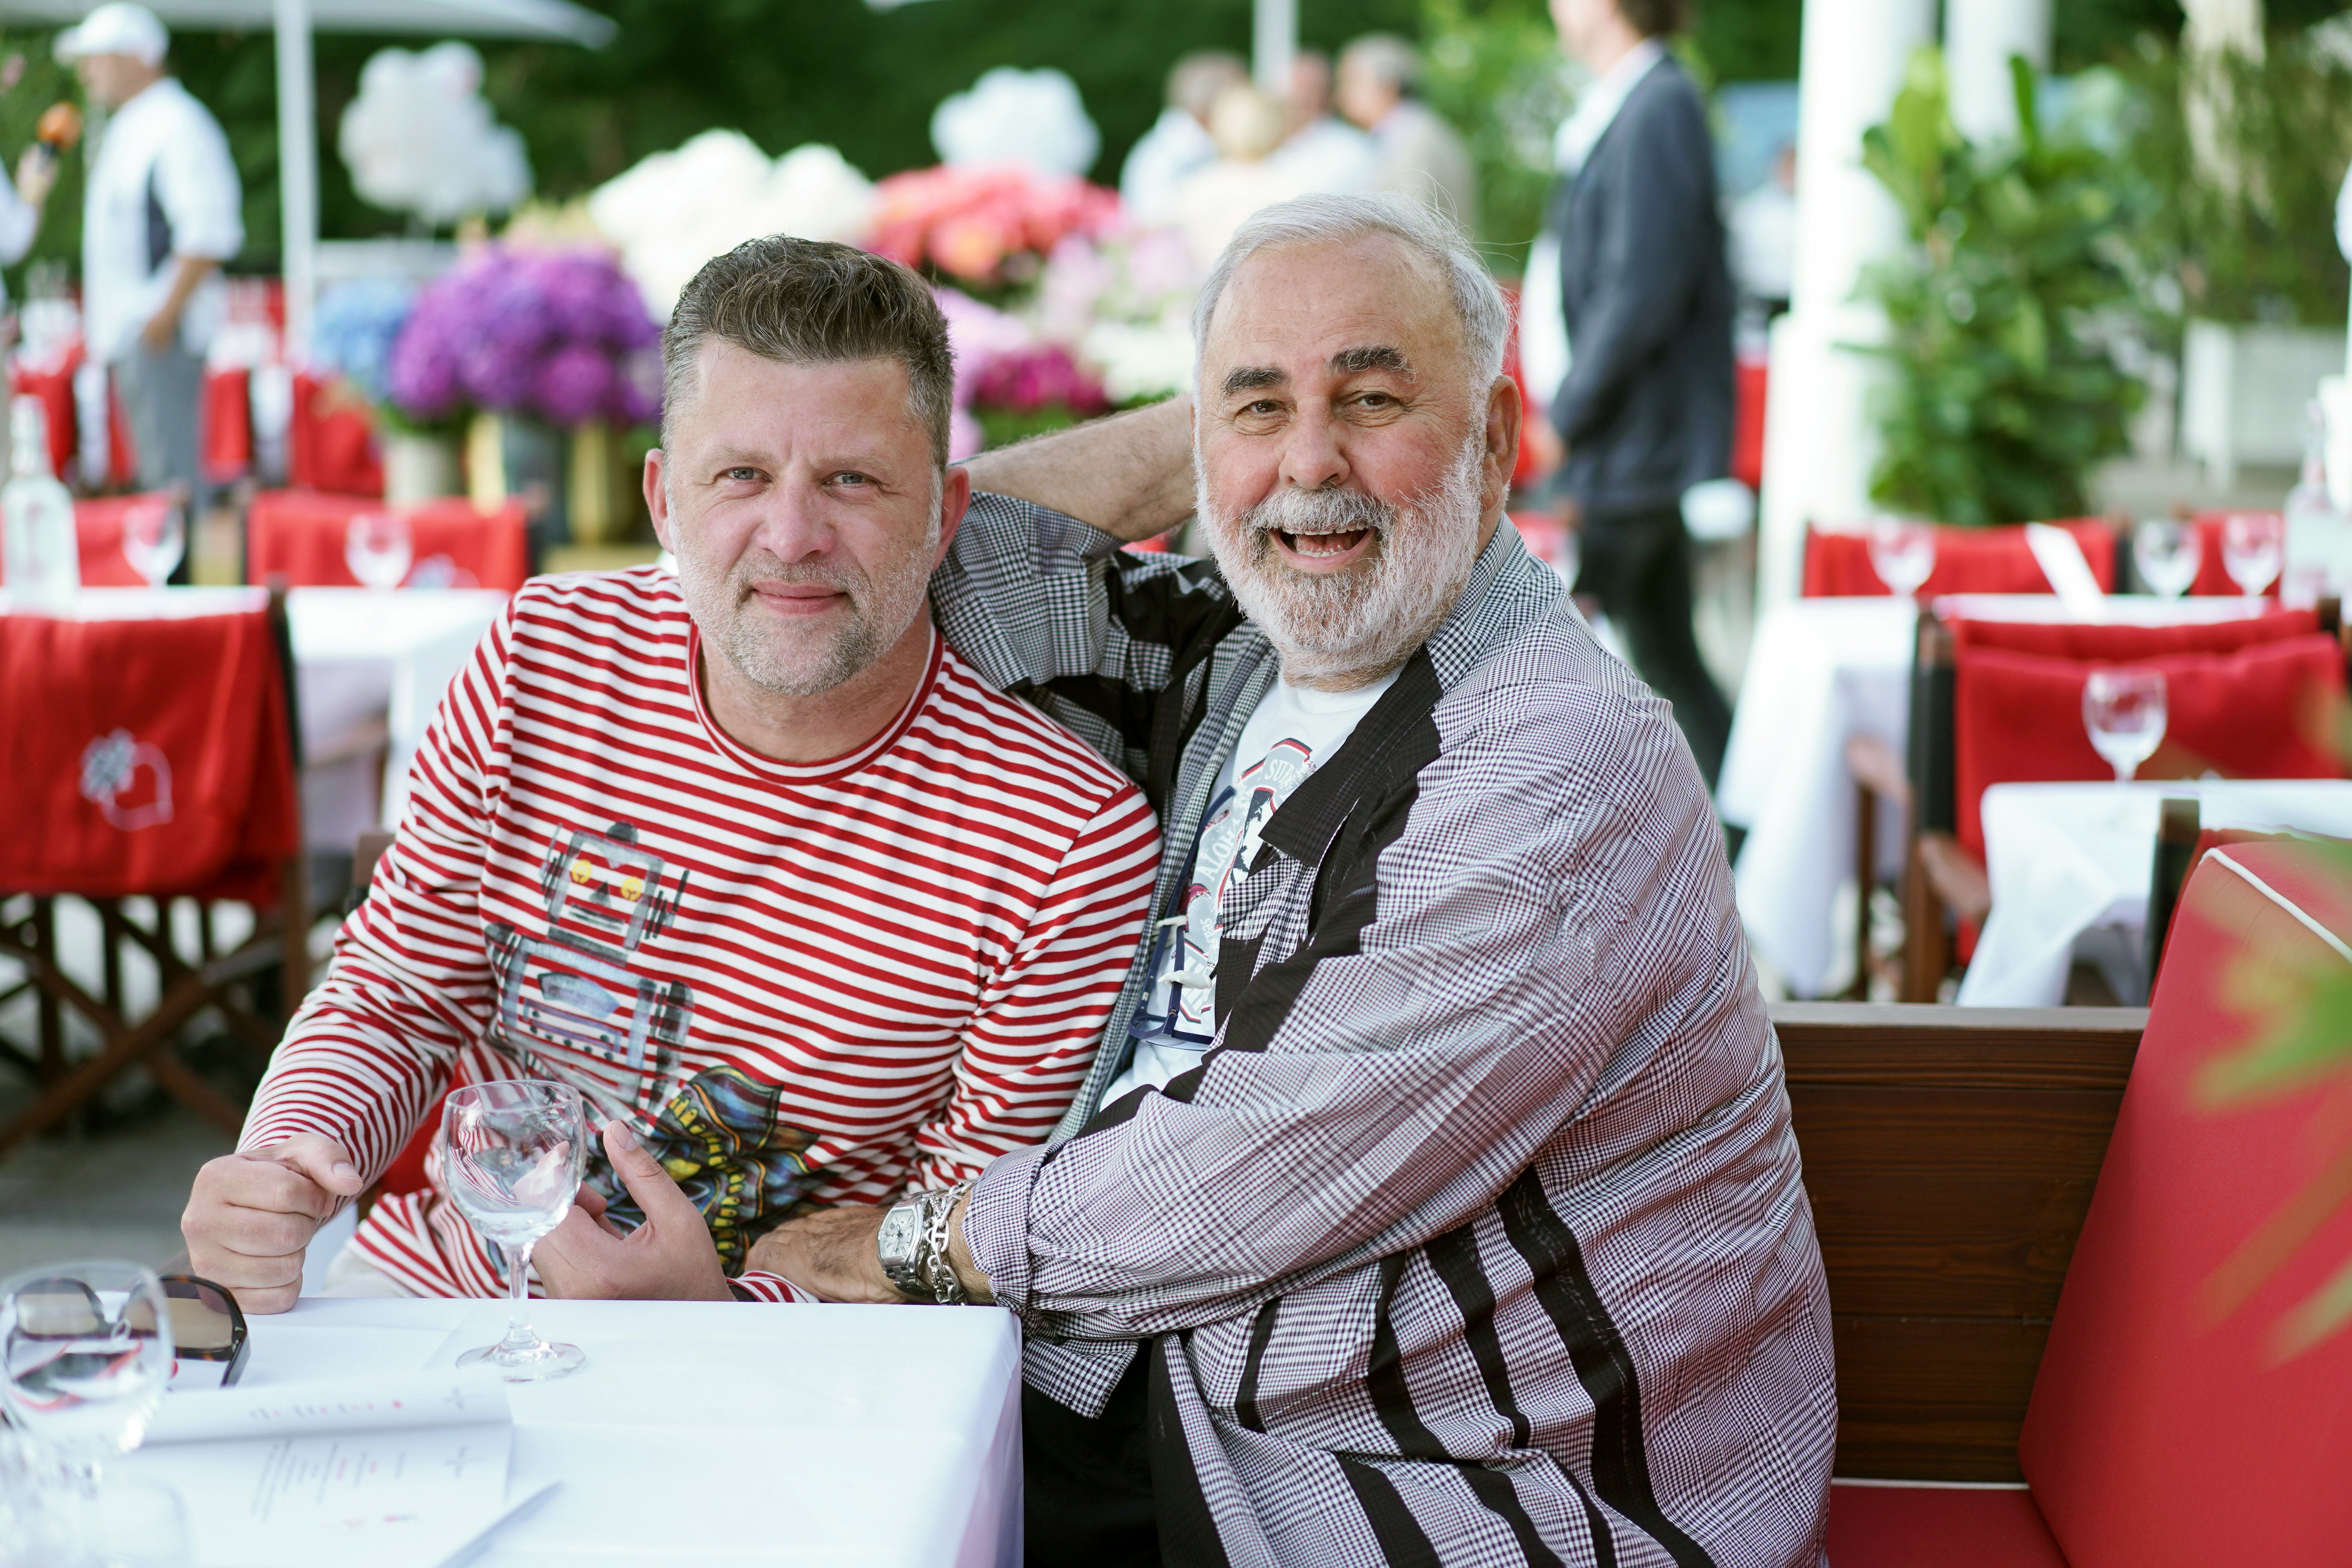 Udo Walz und Ehemann Carsten Thamm-Walz treffen beim Sommerfest "A heart for children" | Quelle: Getty Images